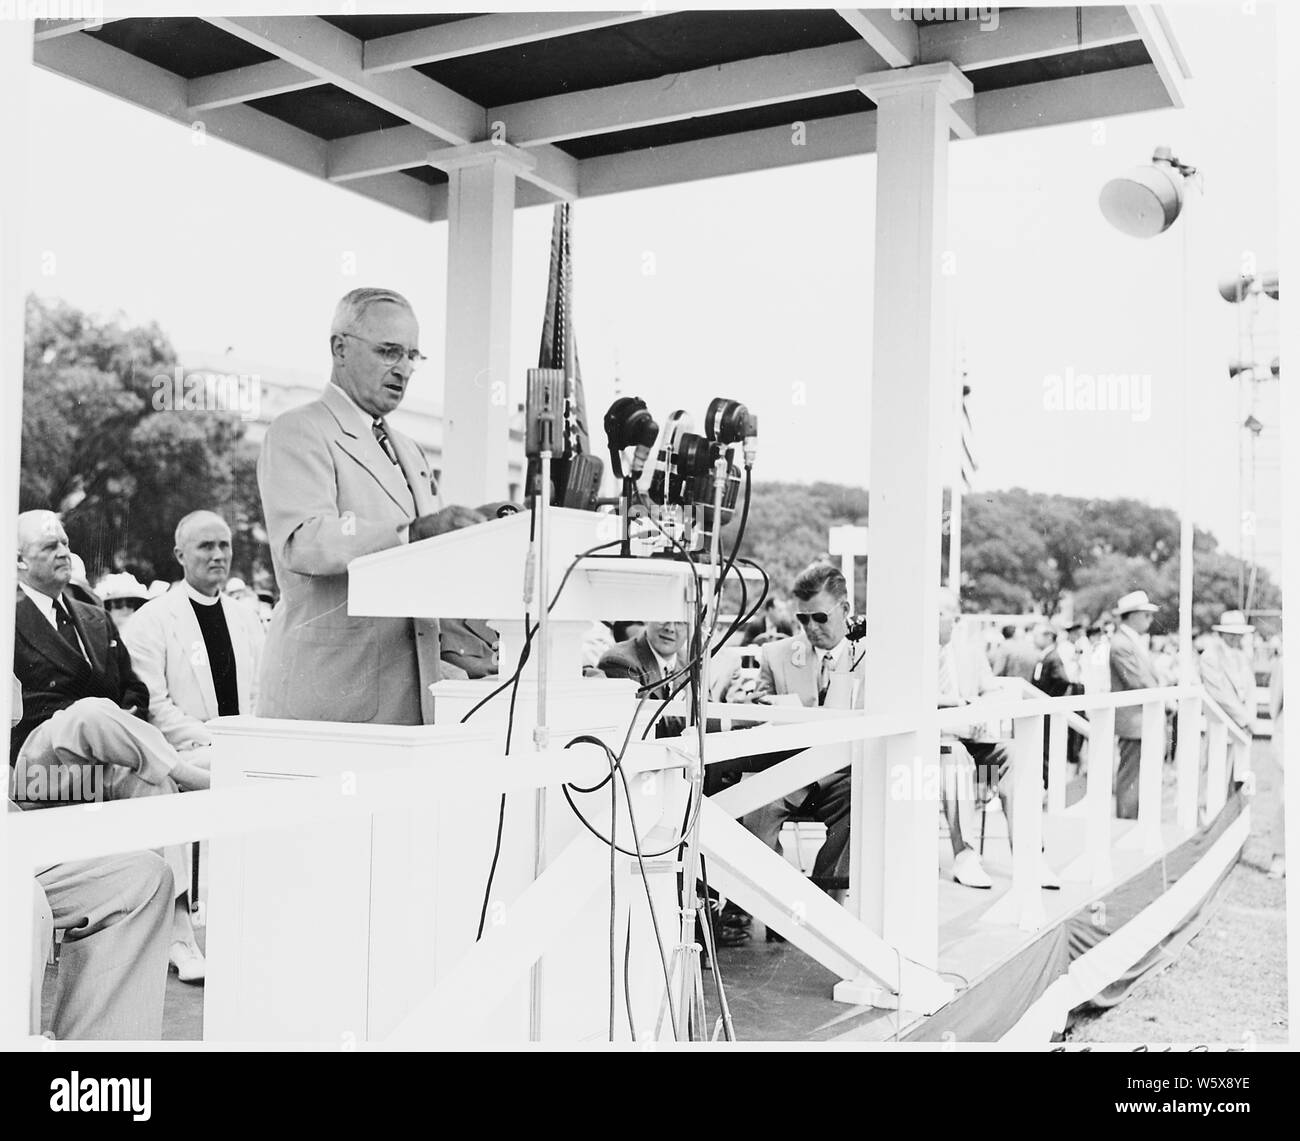 Il Presidente Truman assiste le cerimonie per celebrare il centesimo anniversario del Monumento di Washington. È lui a podio in questa foto. Foto Stock